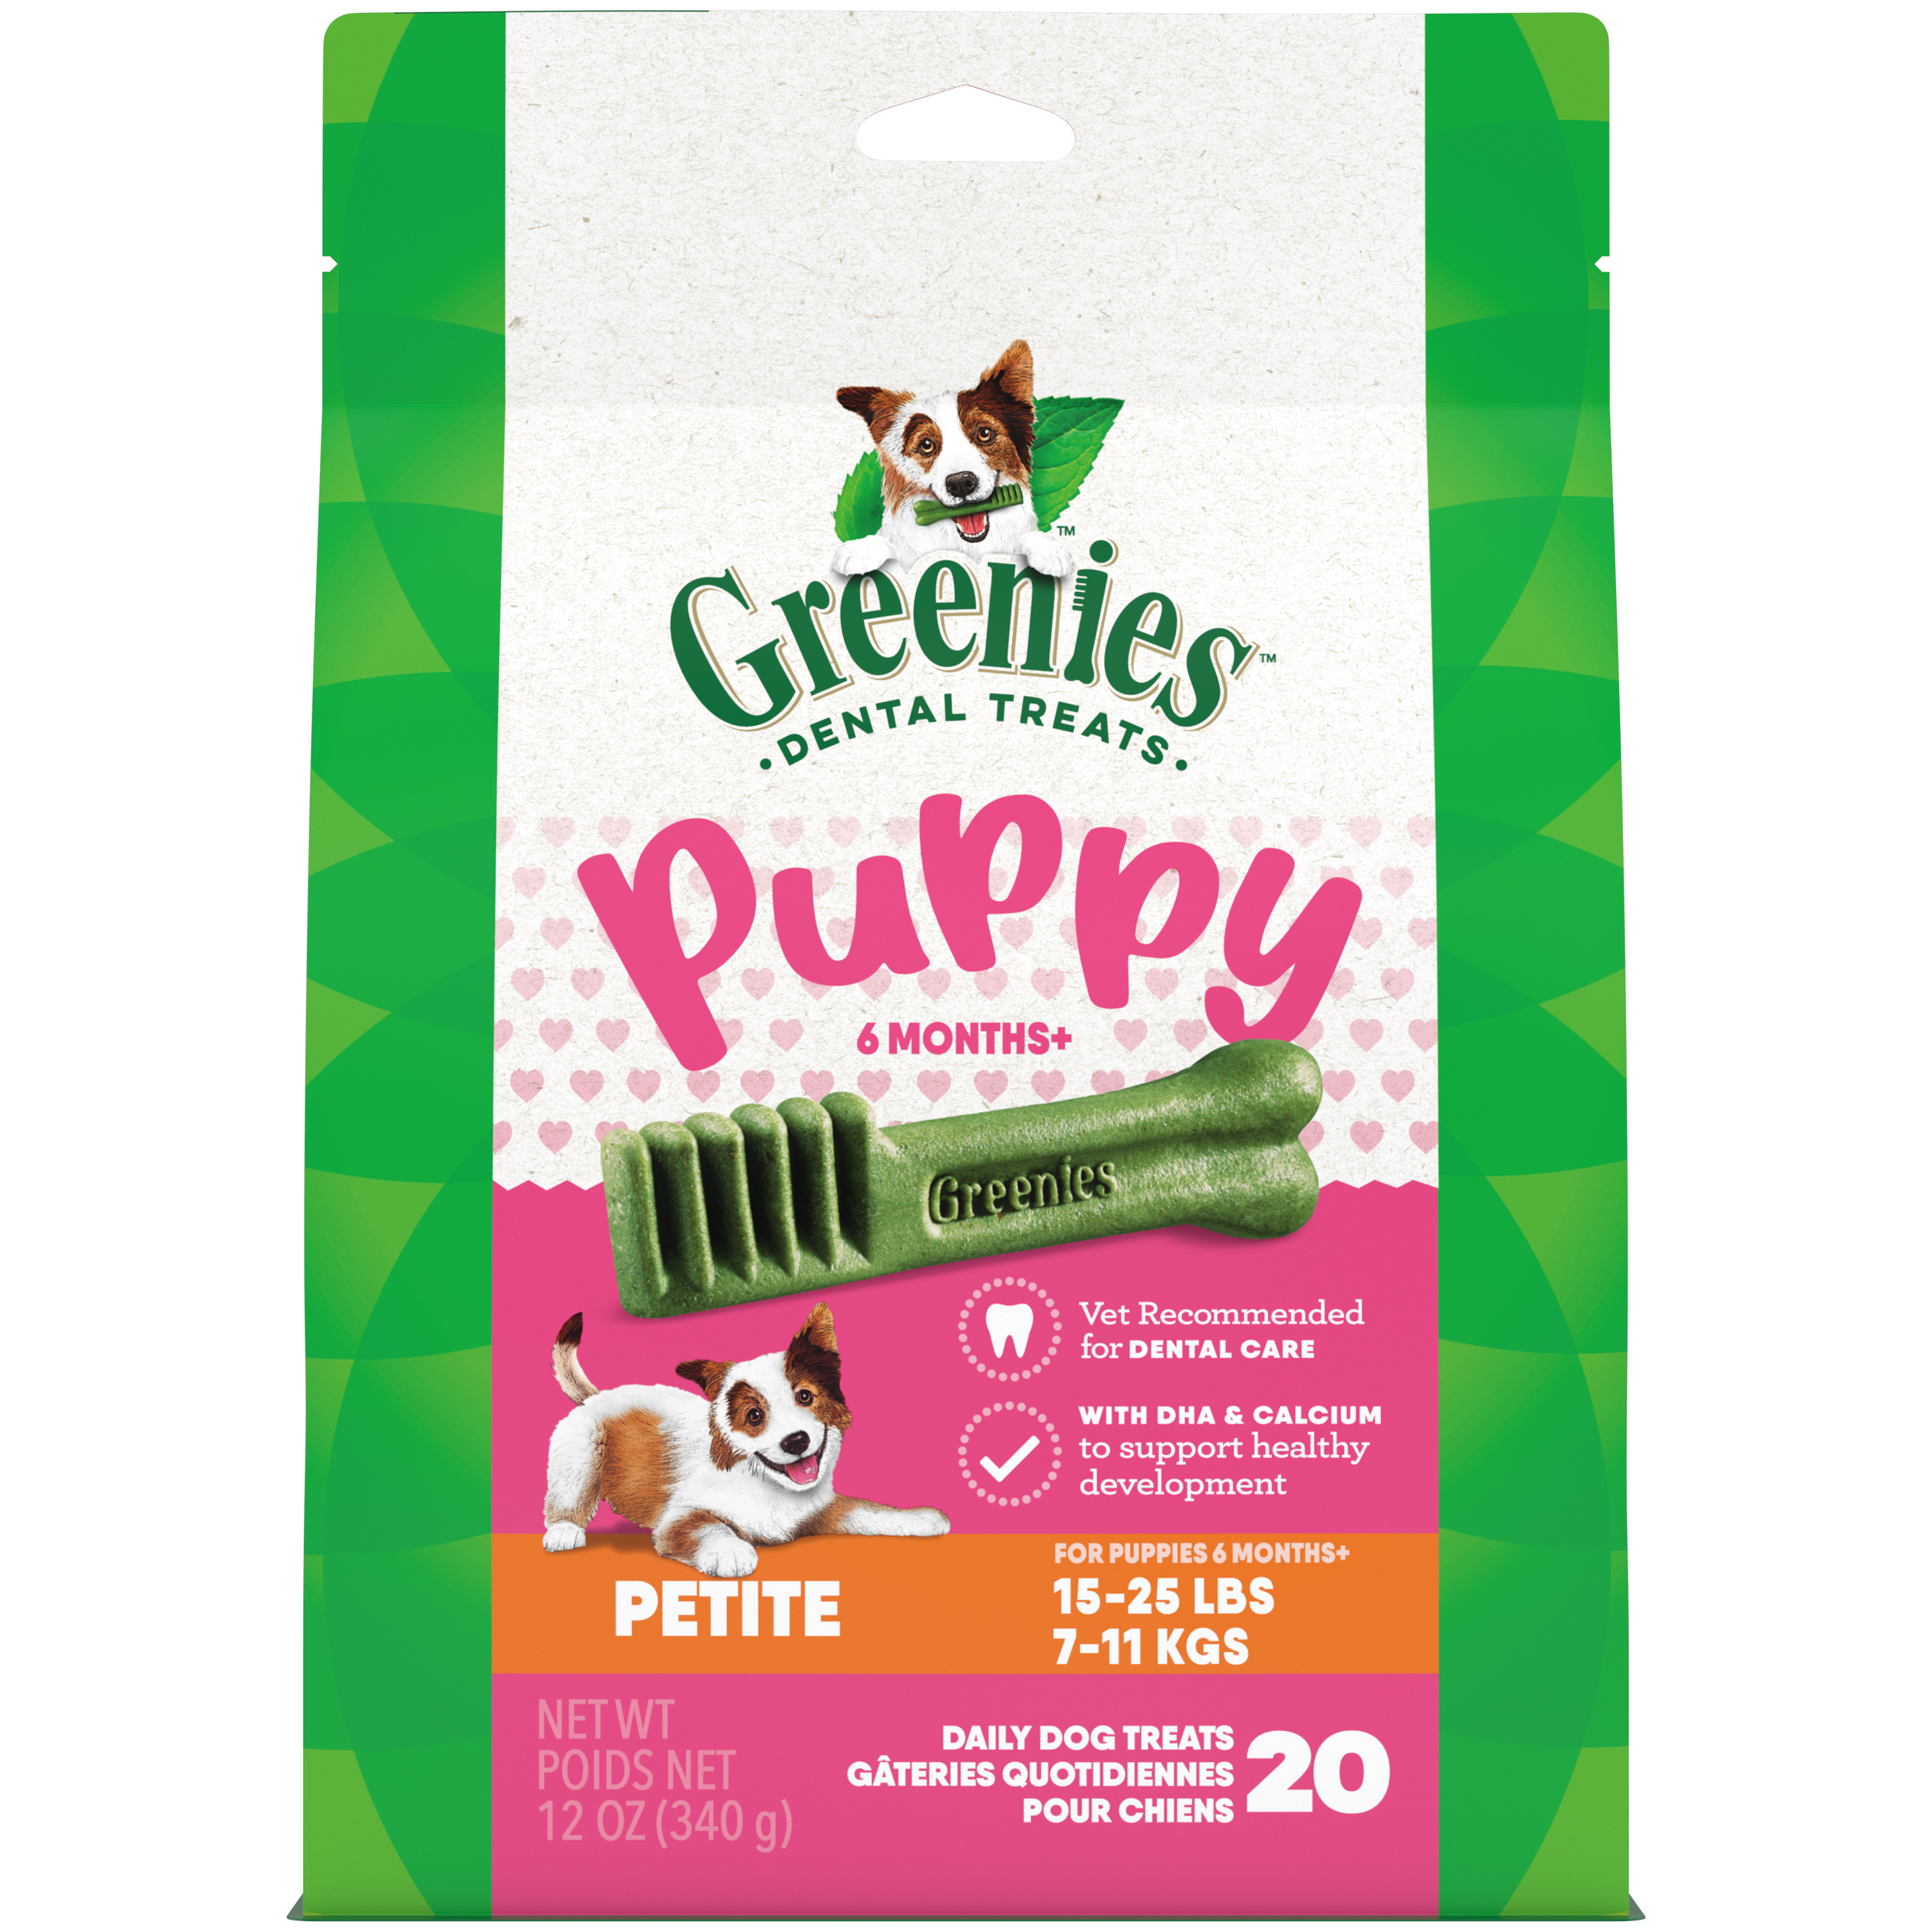 12oz Greenies PUPPY Petite Treat Pack - Treats